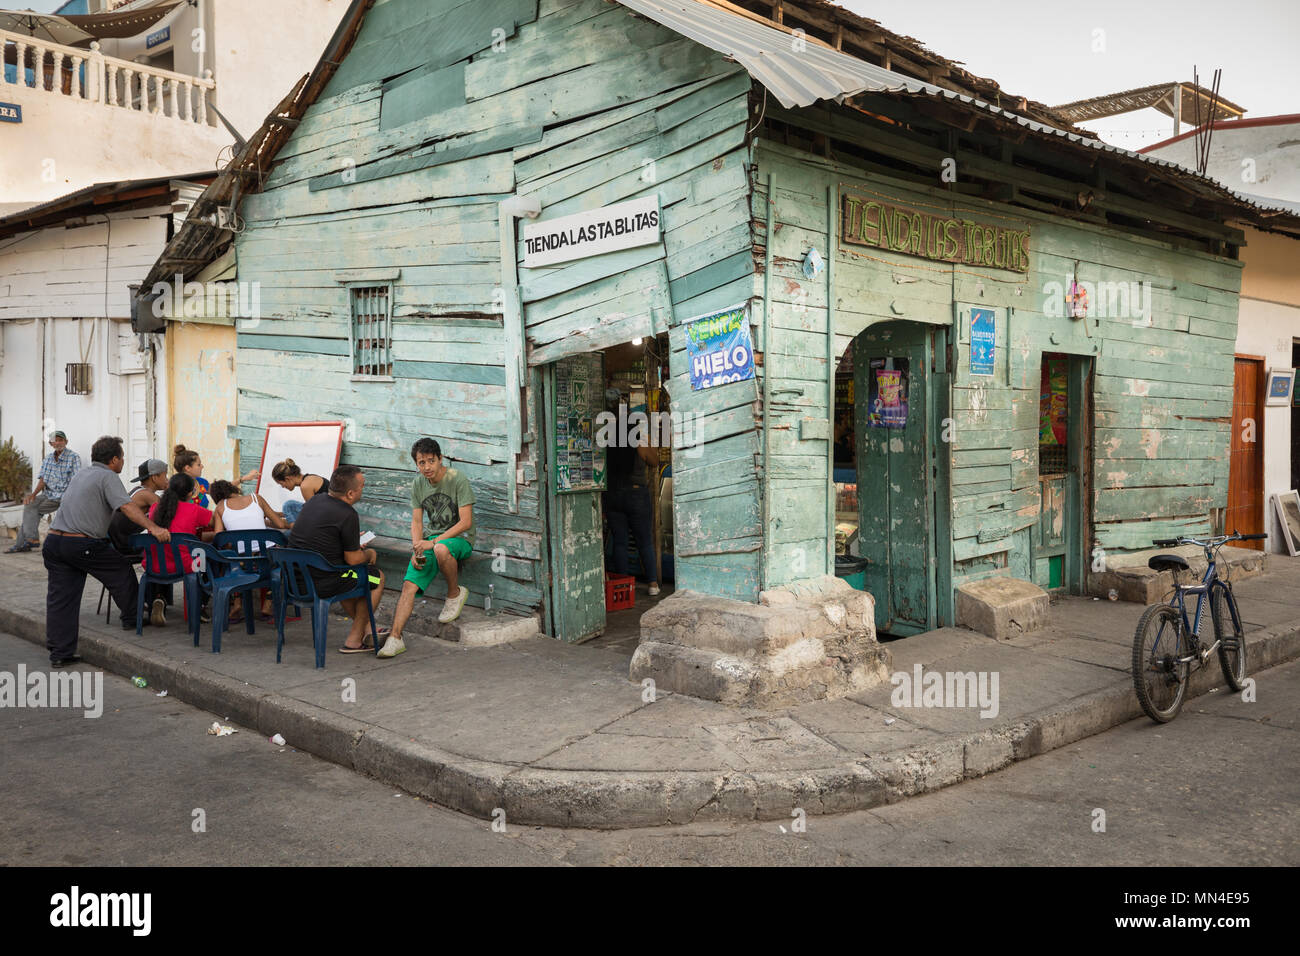 Cours d'anglais à l'extérieur d'une boutique sur rues colorées de Getsemani, Carthagène, Colombie, Amérique du Sud Banque D'Images